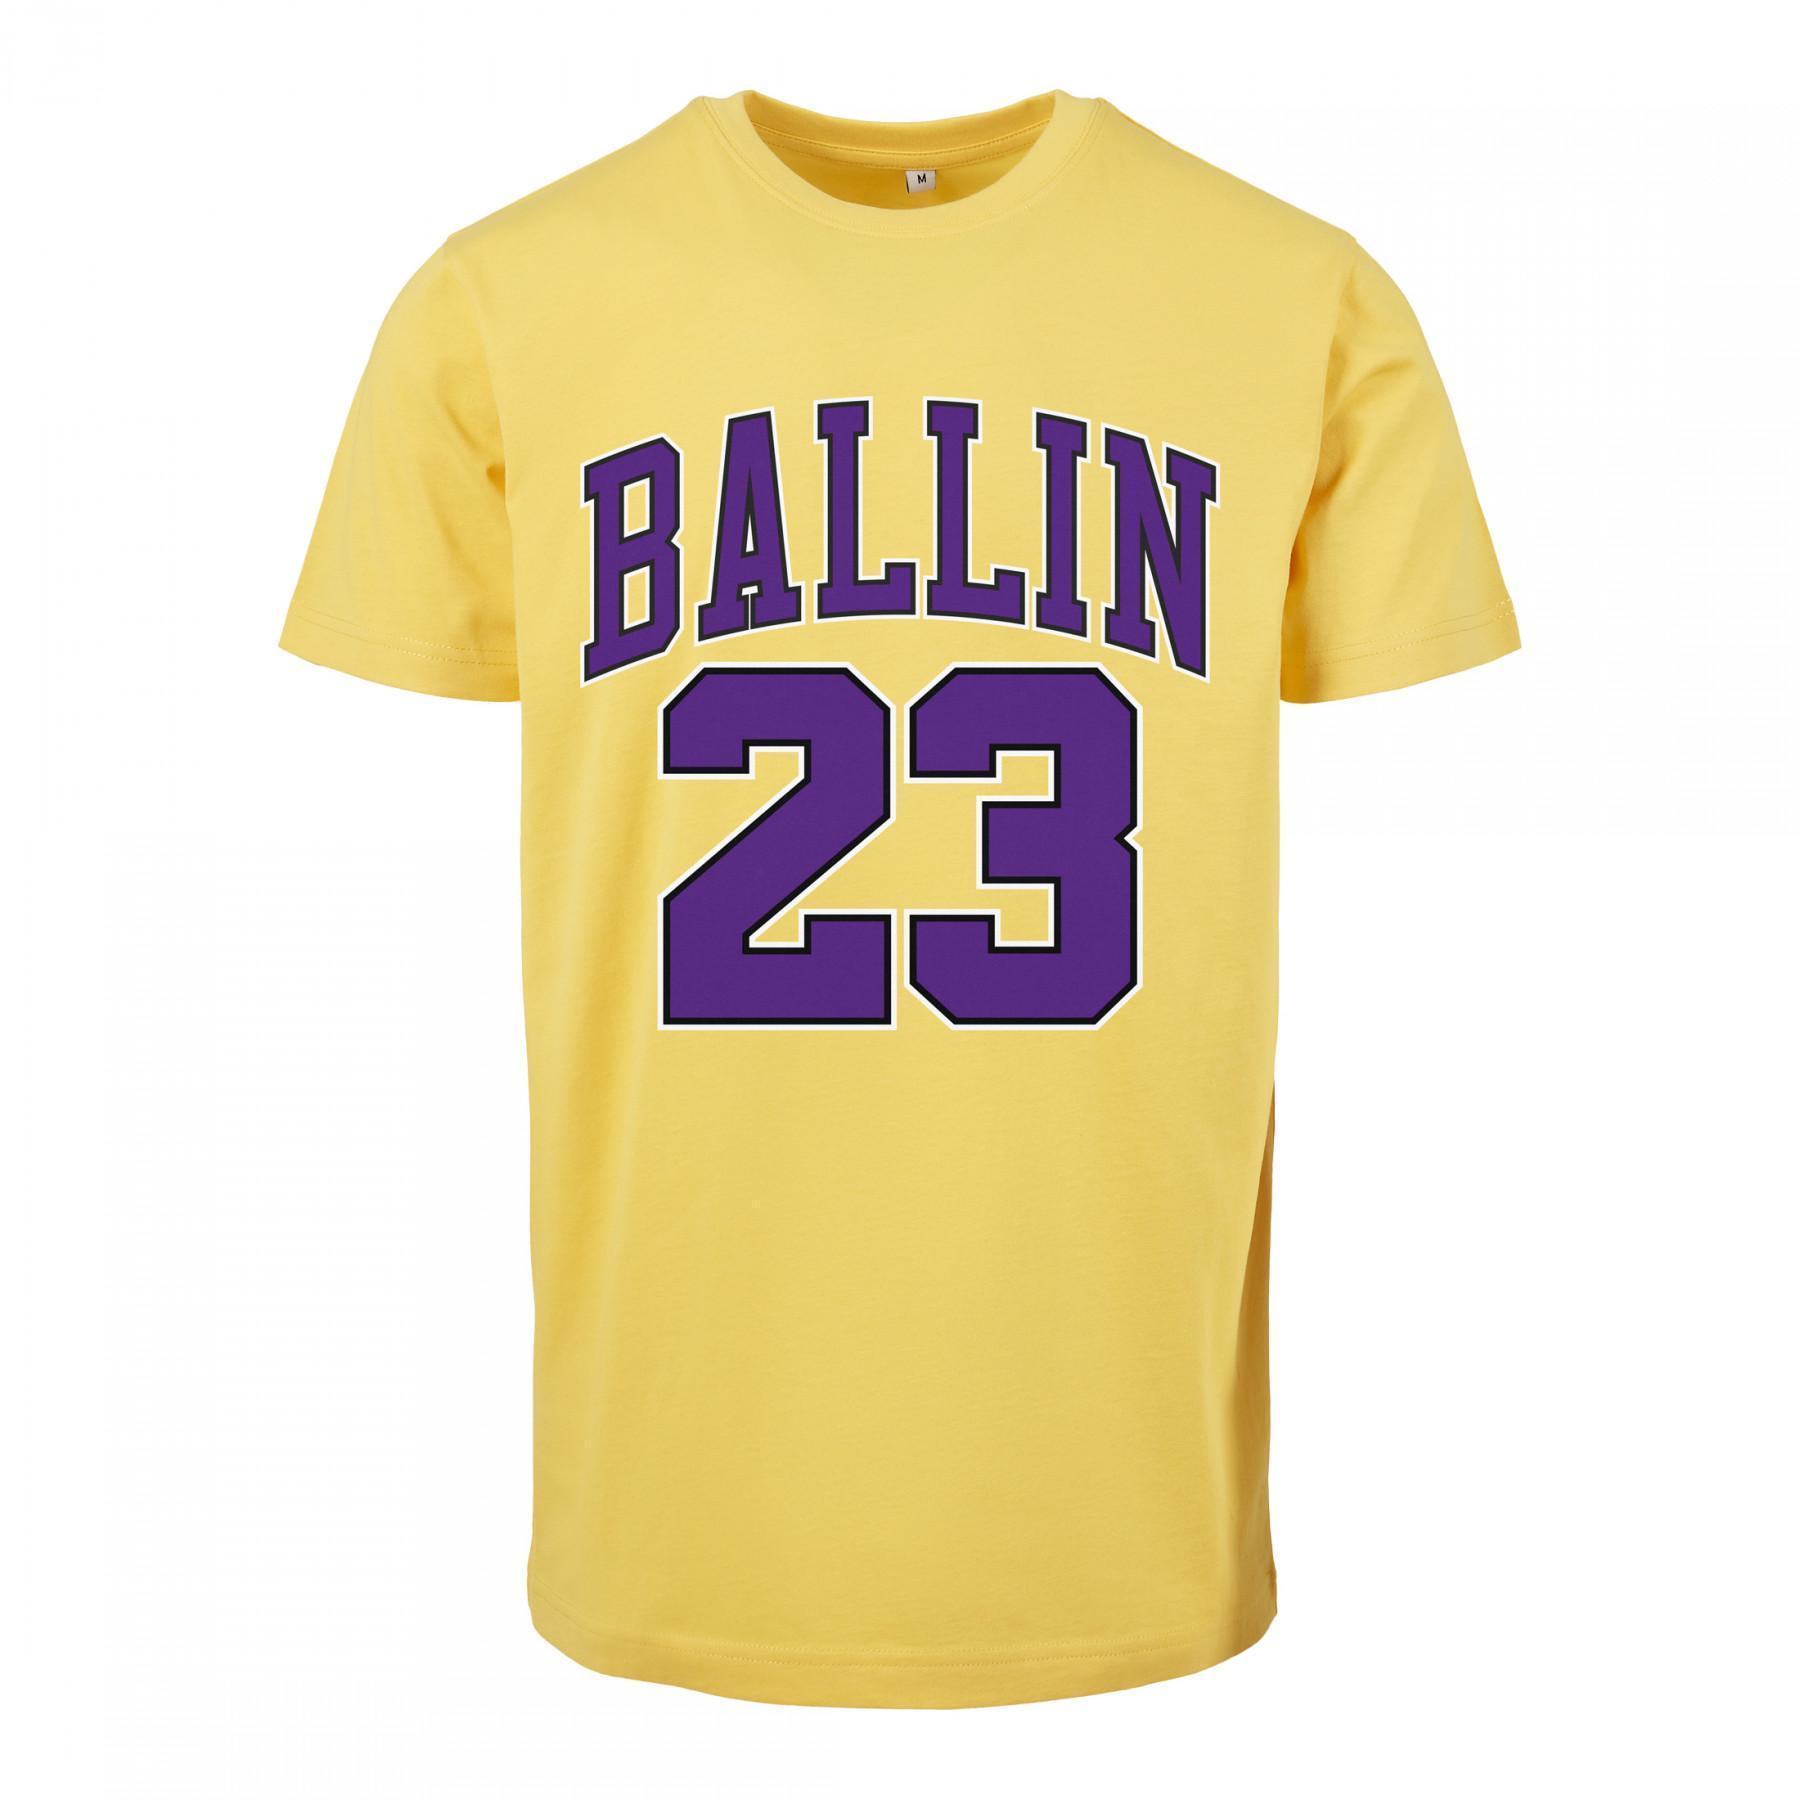 T-shirt Mister Tee ballin 23